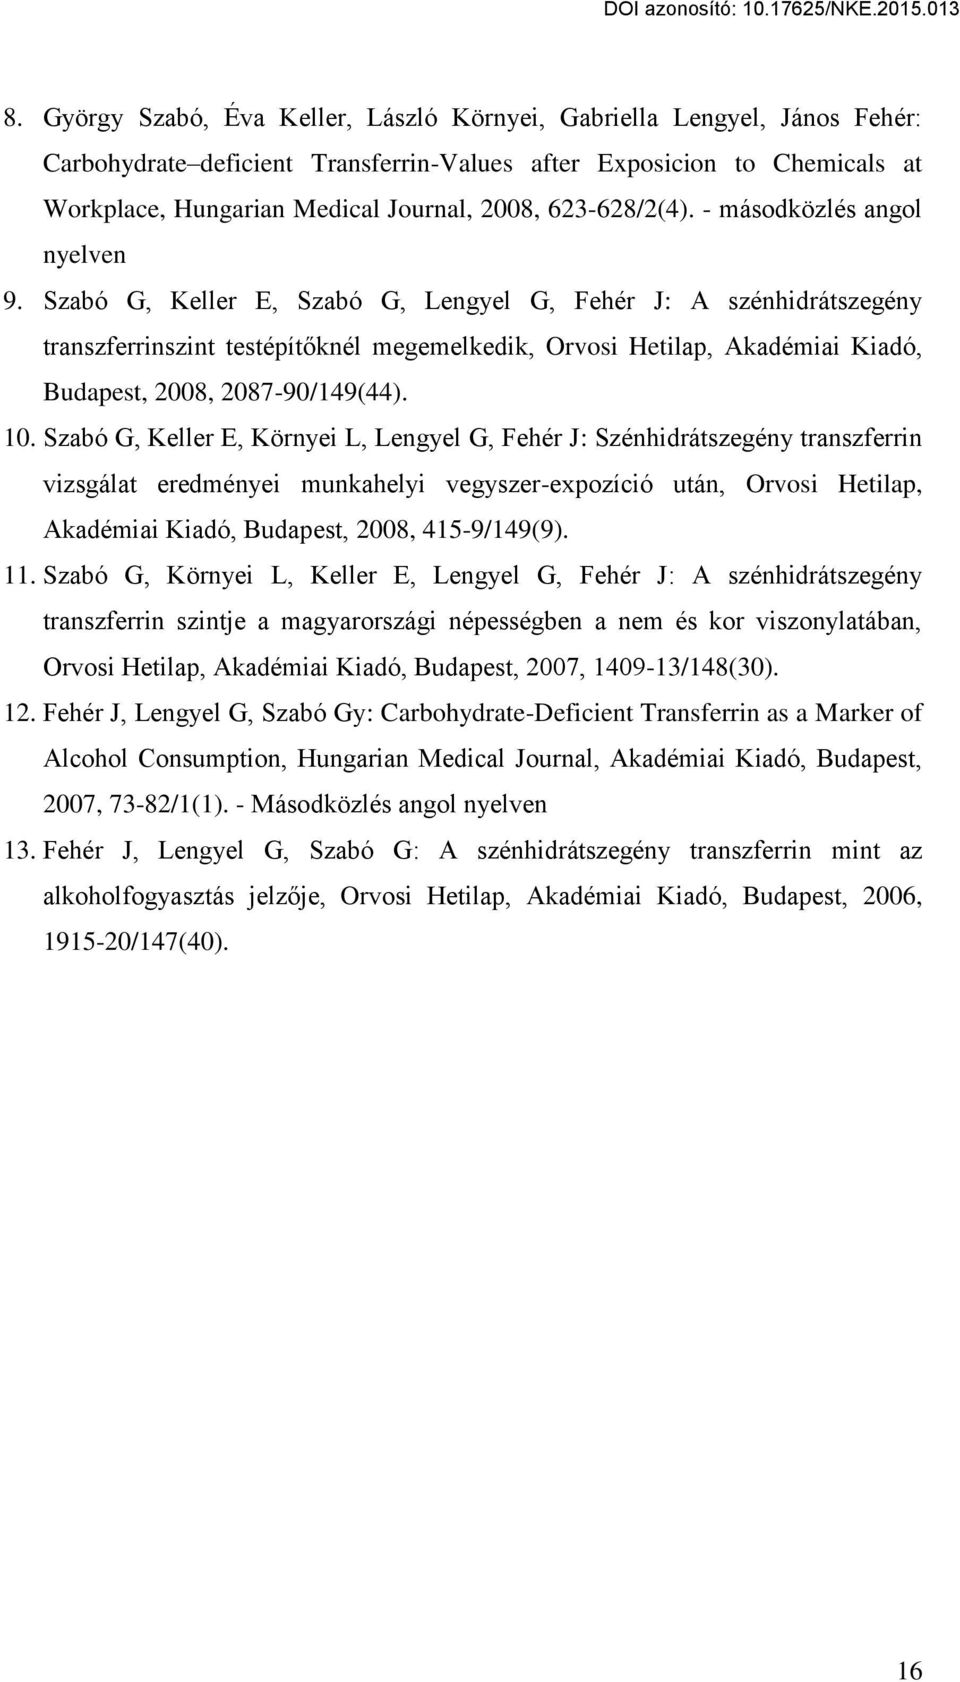 Szabó G, Keller E, Szabó G, Lengyel G, Fehér J: A szénhidrátszegény transzferrinszint testépít knél megemelkedik, Orvosi Hetilap, Akadémiai Kiadó, Budapest, 2008, 2087-90/149(44). 10.